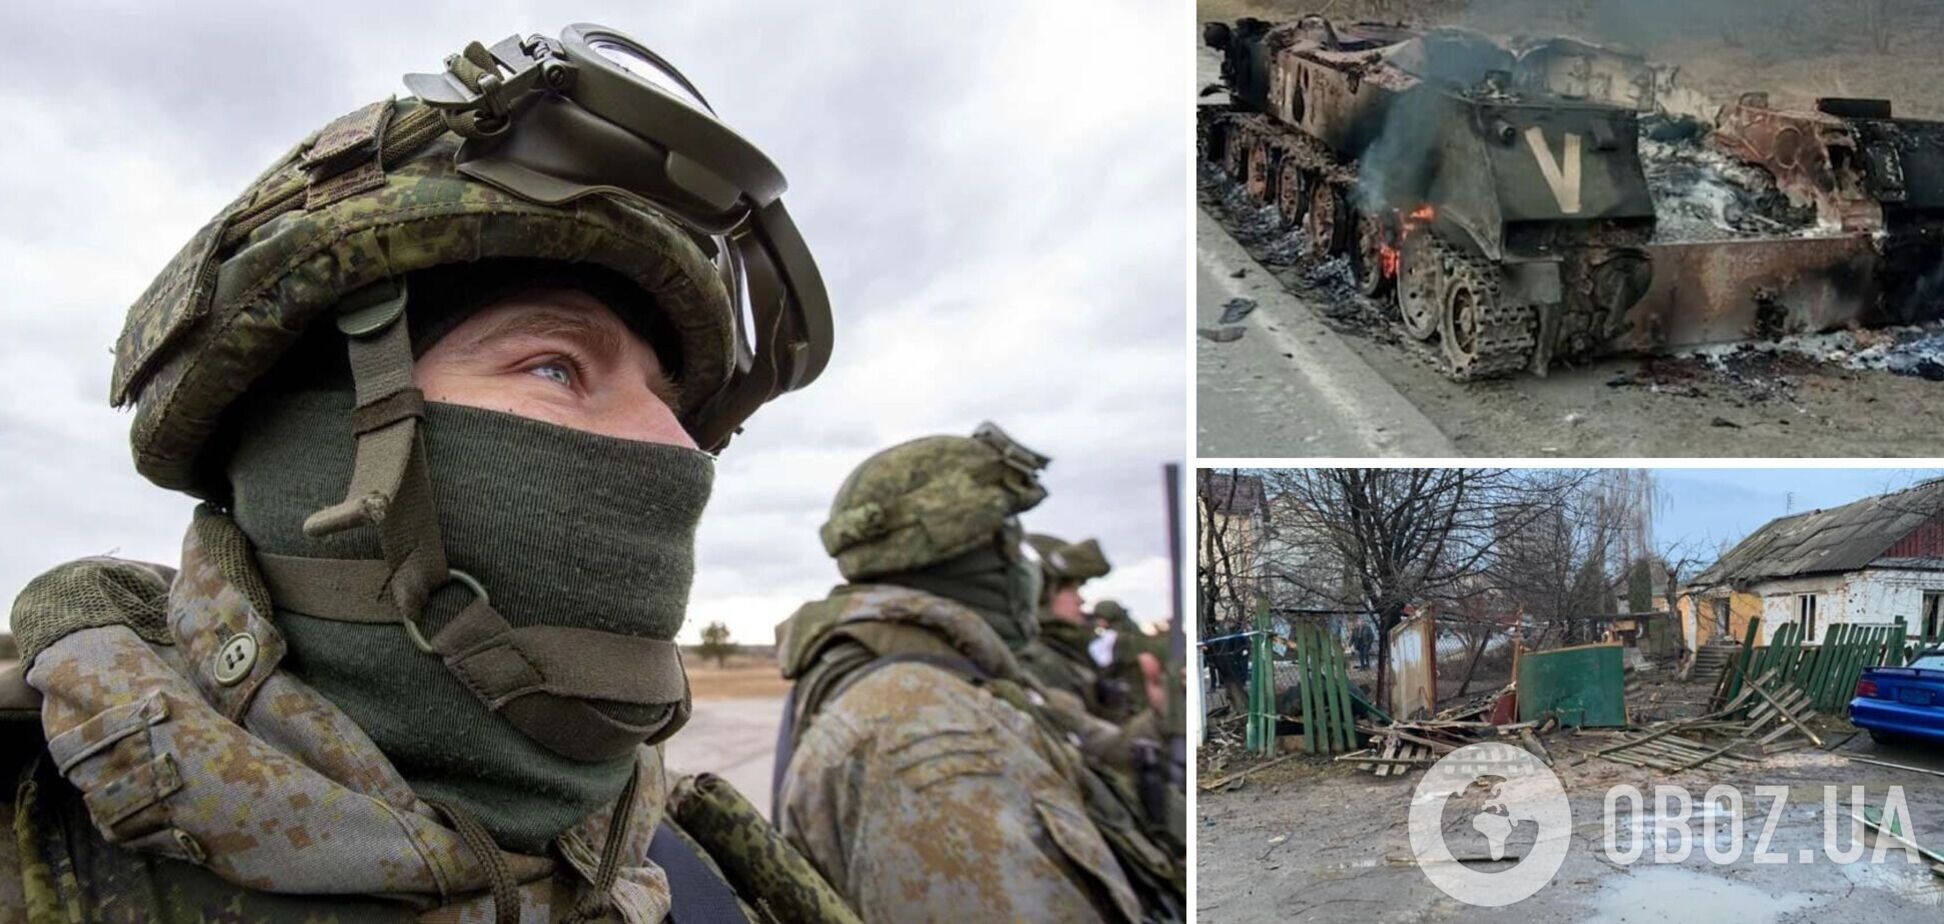 'Ми приготували по гранаті для себе': окупанти на Київщині зазнають втрат і панічно бояться потрапити у полон до ЗСУ. Аудіо